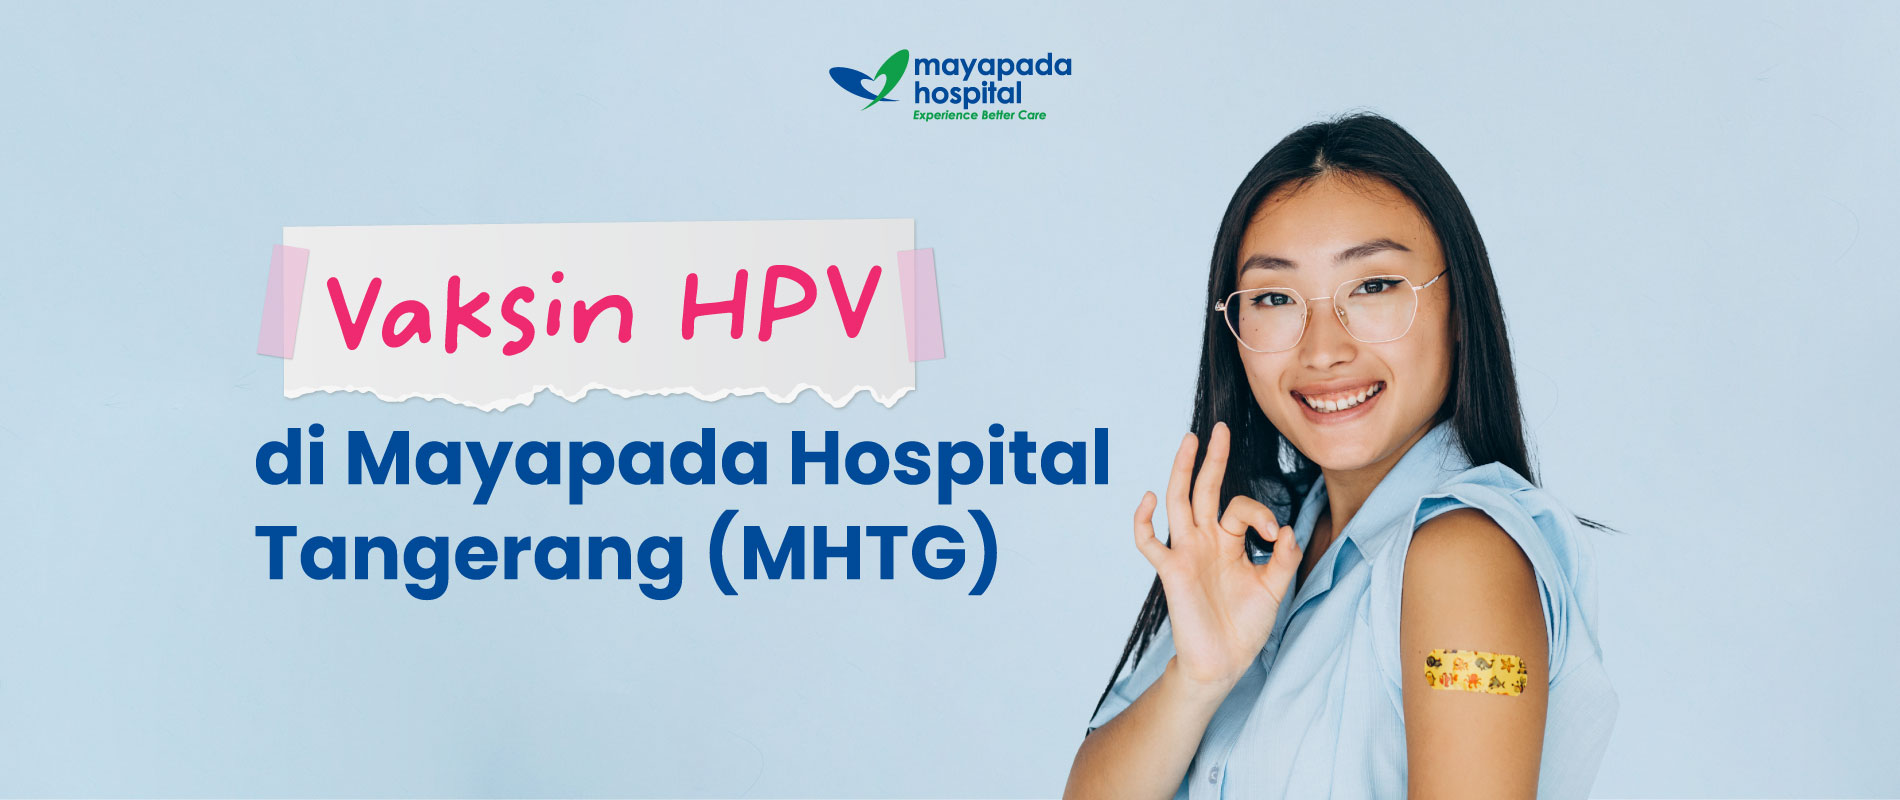 Paket Vaksin HPV di Mayapada Hospital Tangerang (MHTG) IMG